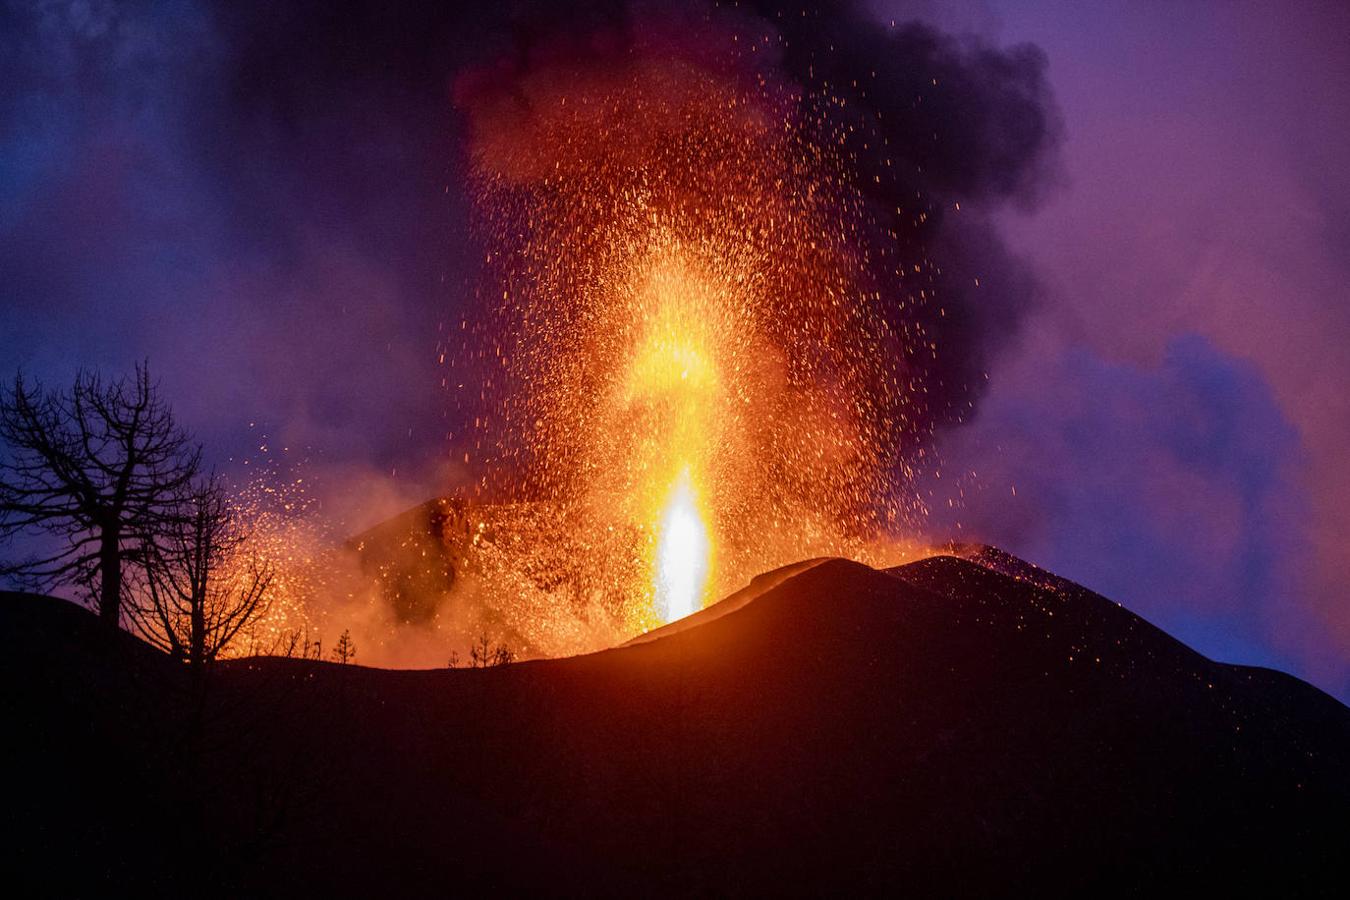 El juego de luces del atardecer hace que la erupción sea un espectáculo único y contradictorio con el daño que produce, una naturaleza bella y destructiva. 